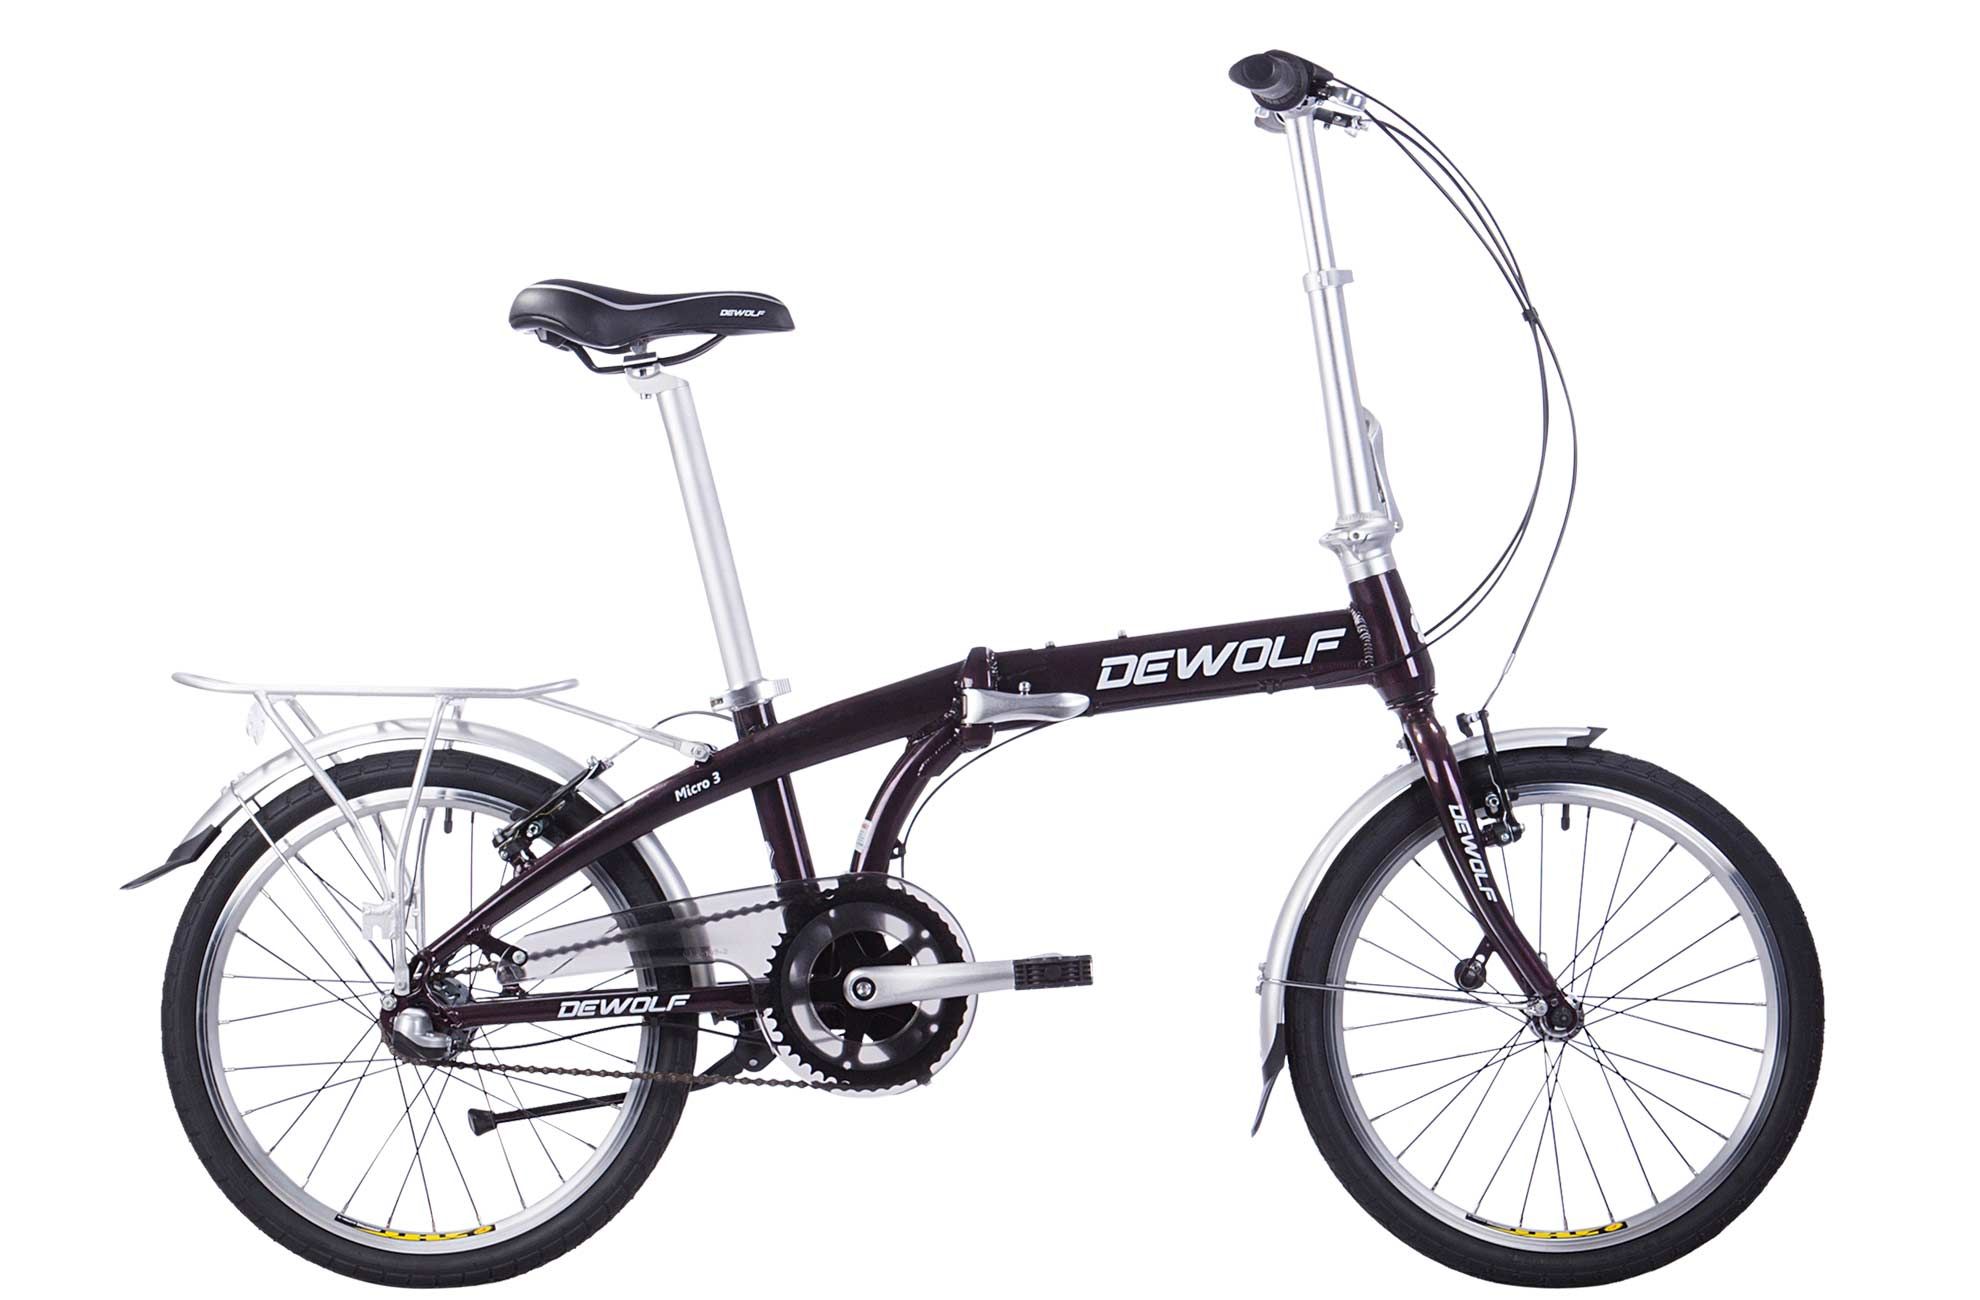  Велосипед Dewolf Micro 3 2016